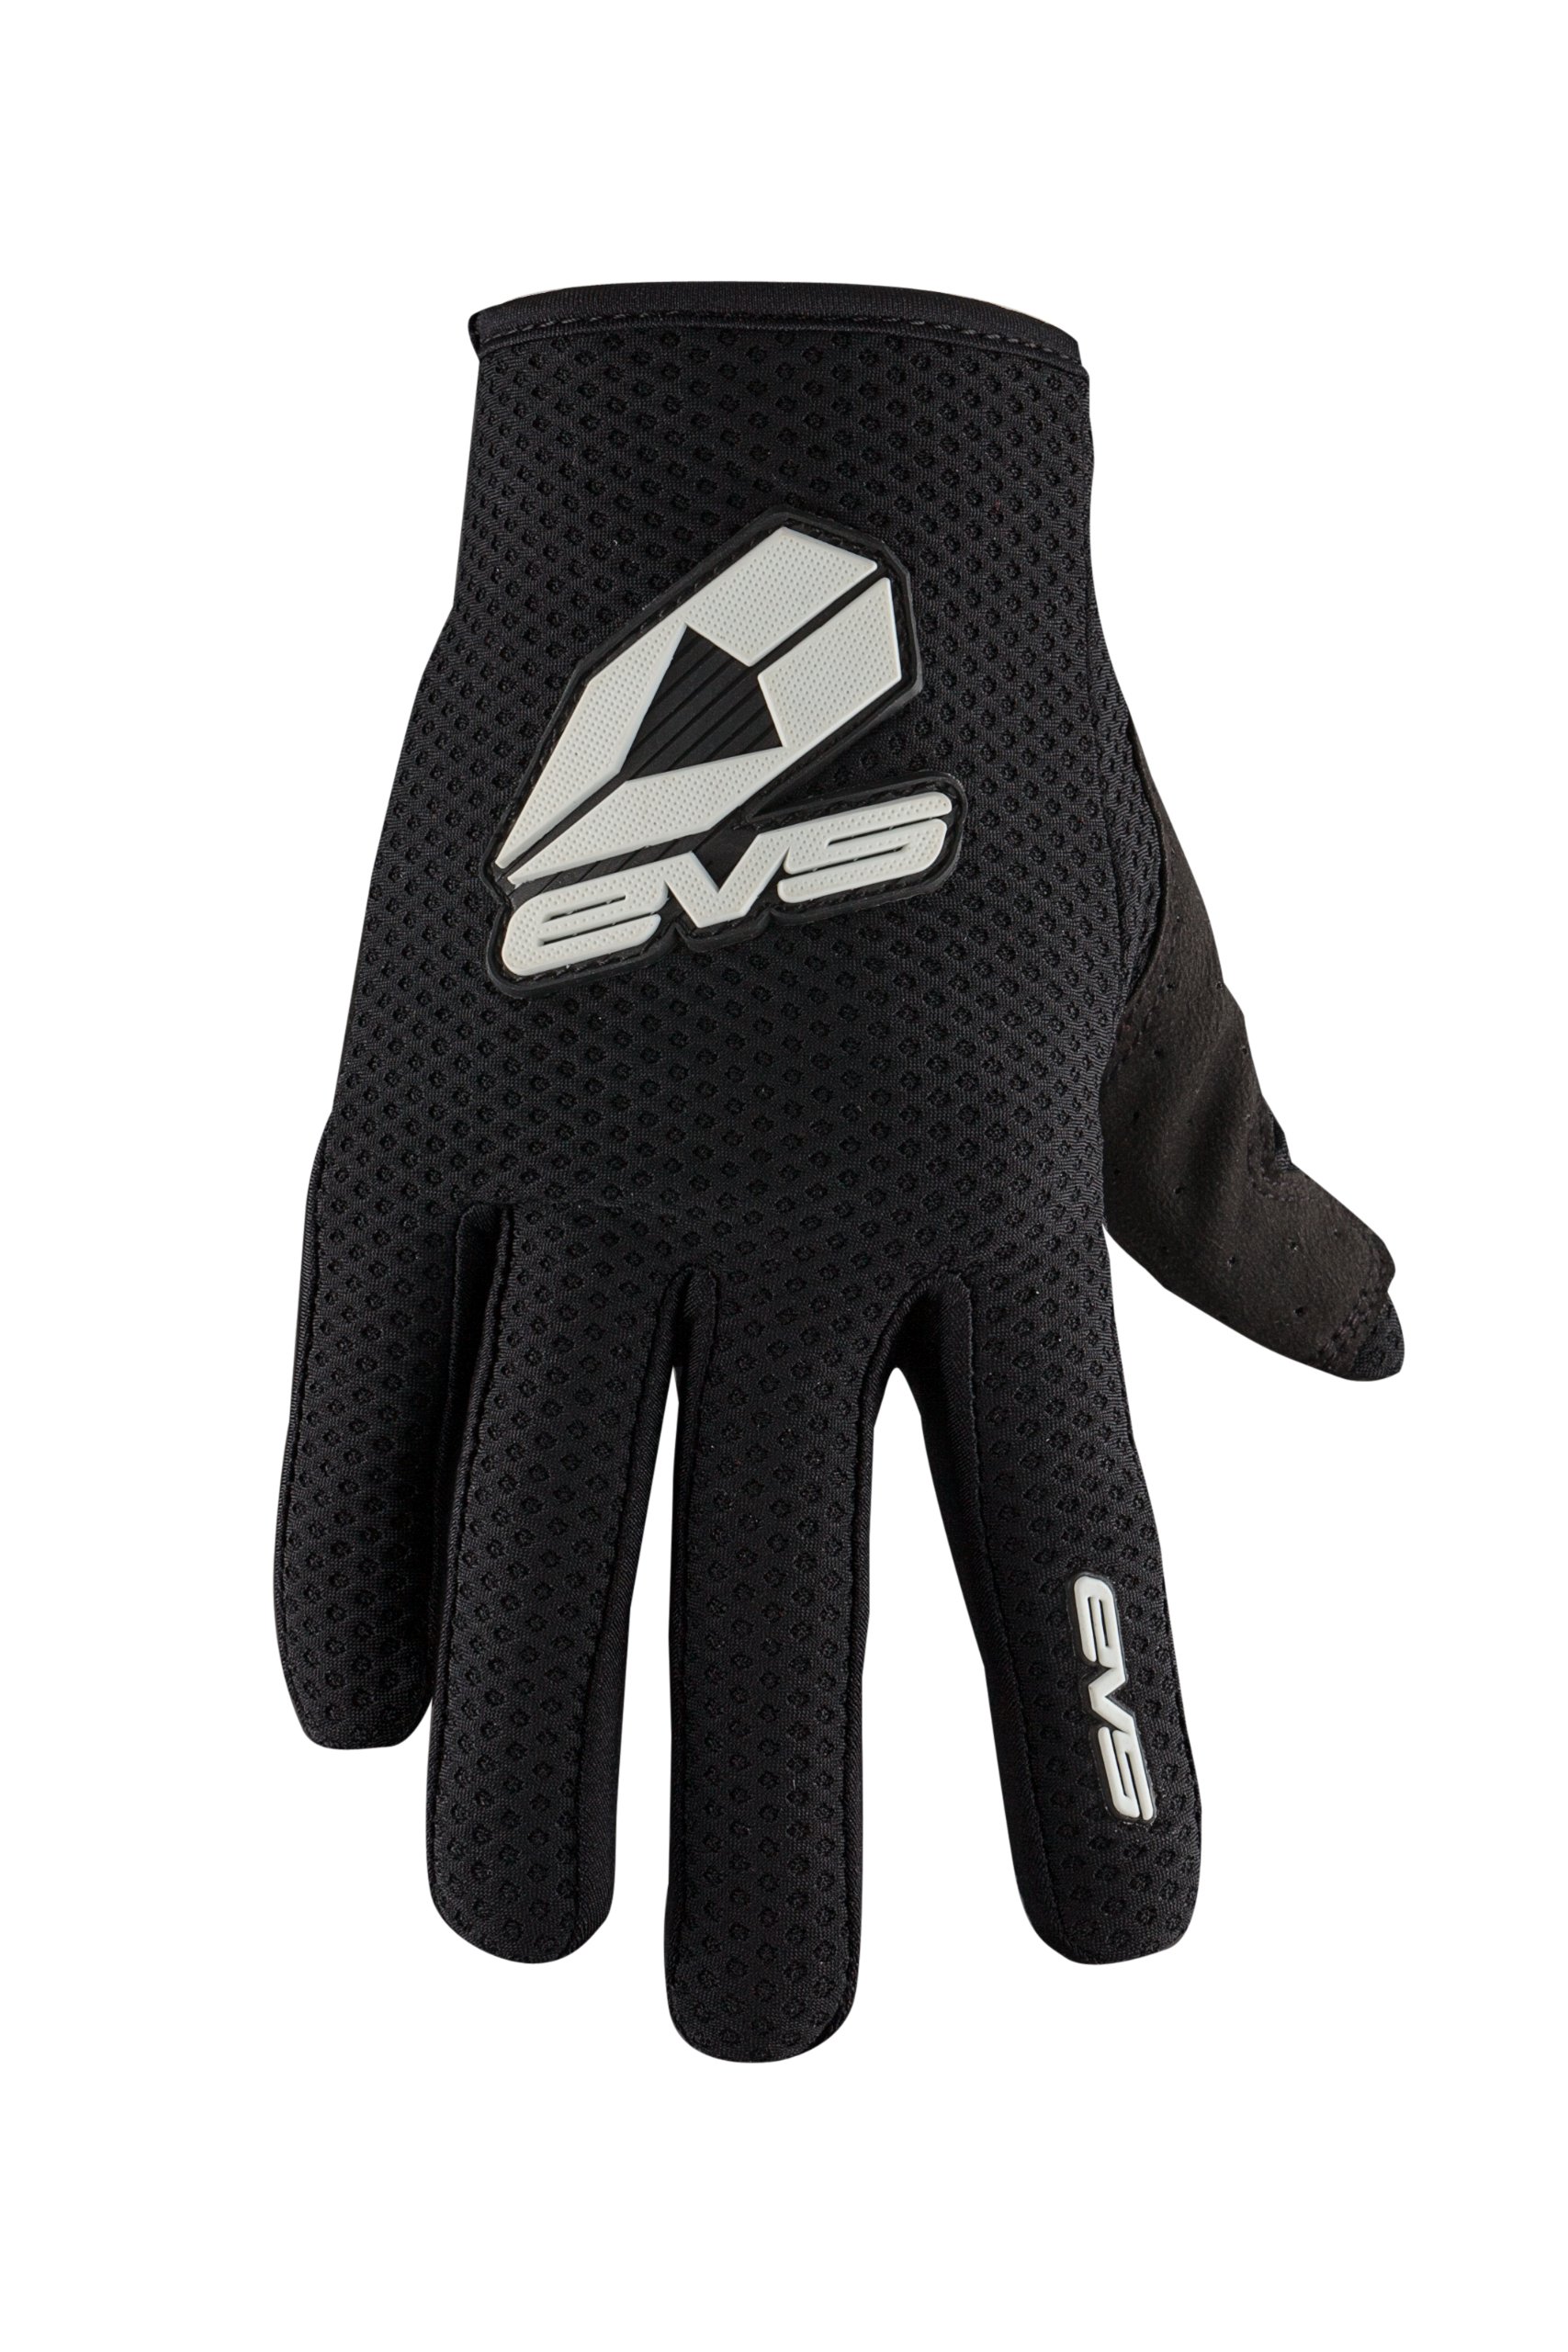 EVS Sports sport Glove, Adult, M, Black, Größe medium von EVS Sports